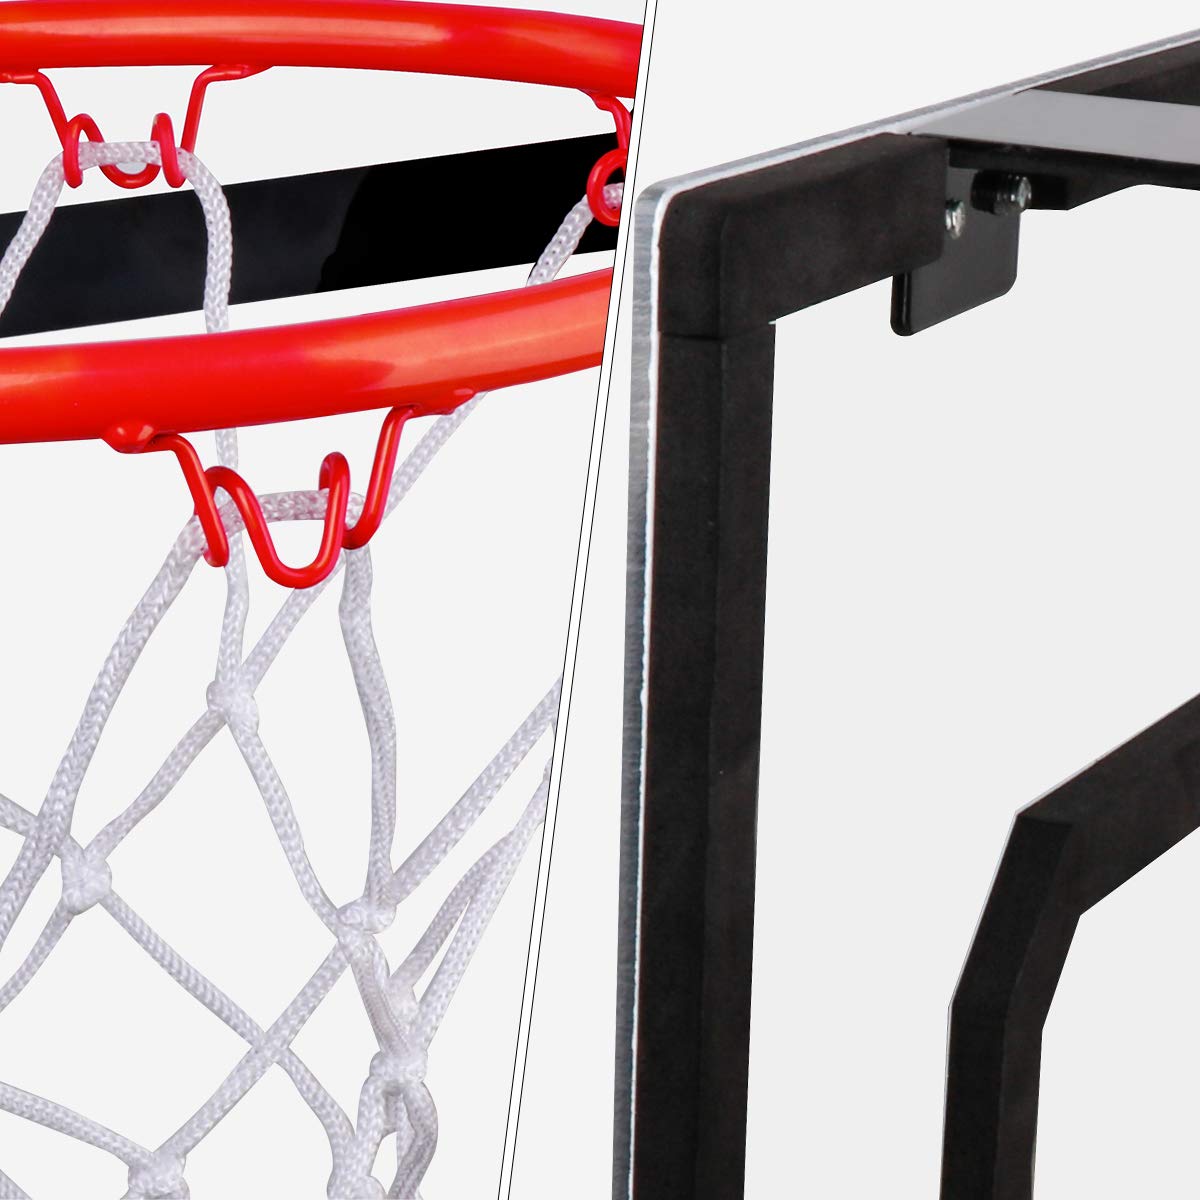 Meland Indoor Mini Basketball Hoop Set for Kids - Basketball Hoop for Door with 4 Balls & Complete Basketball Accessories - Basketball Toy Gifts for Kids Boys Teens